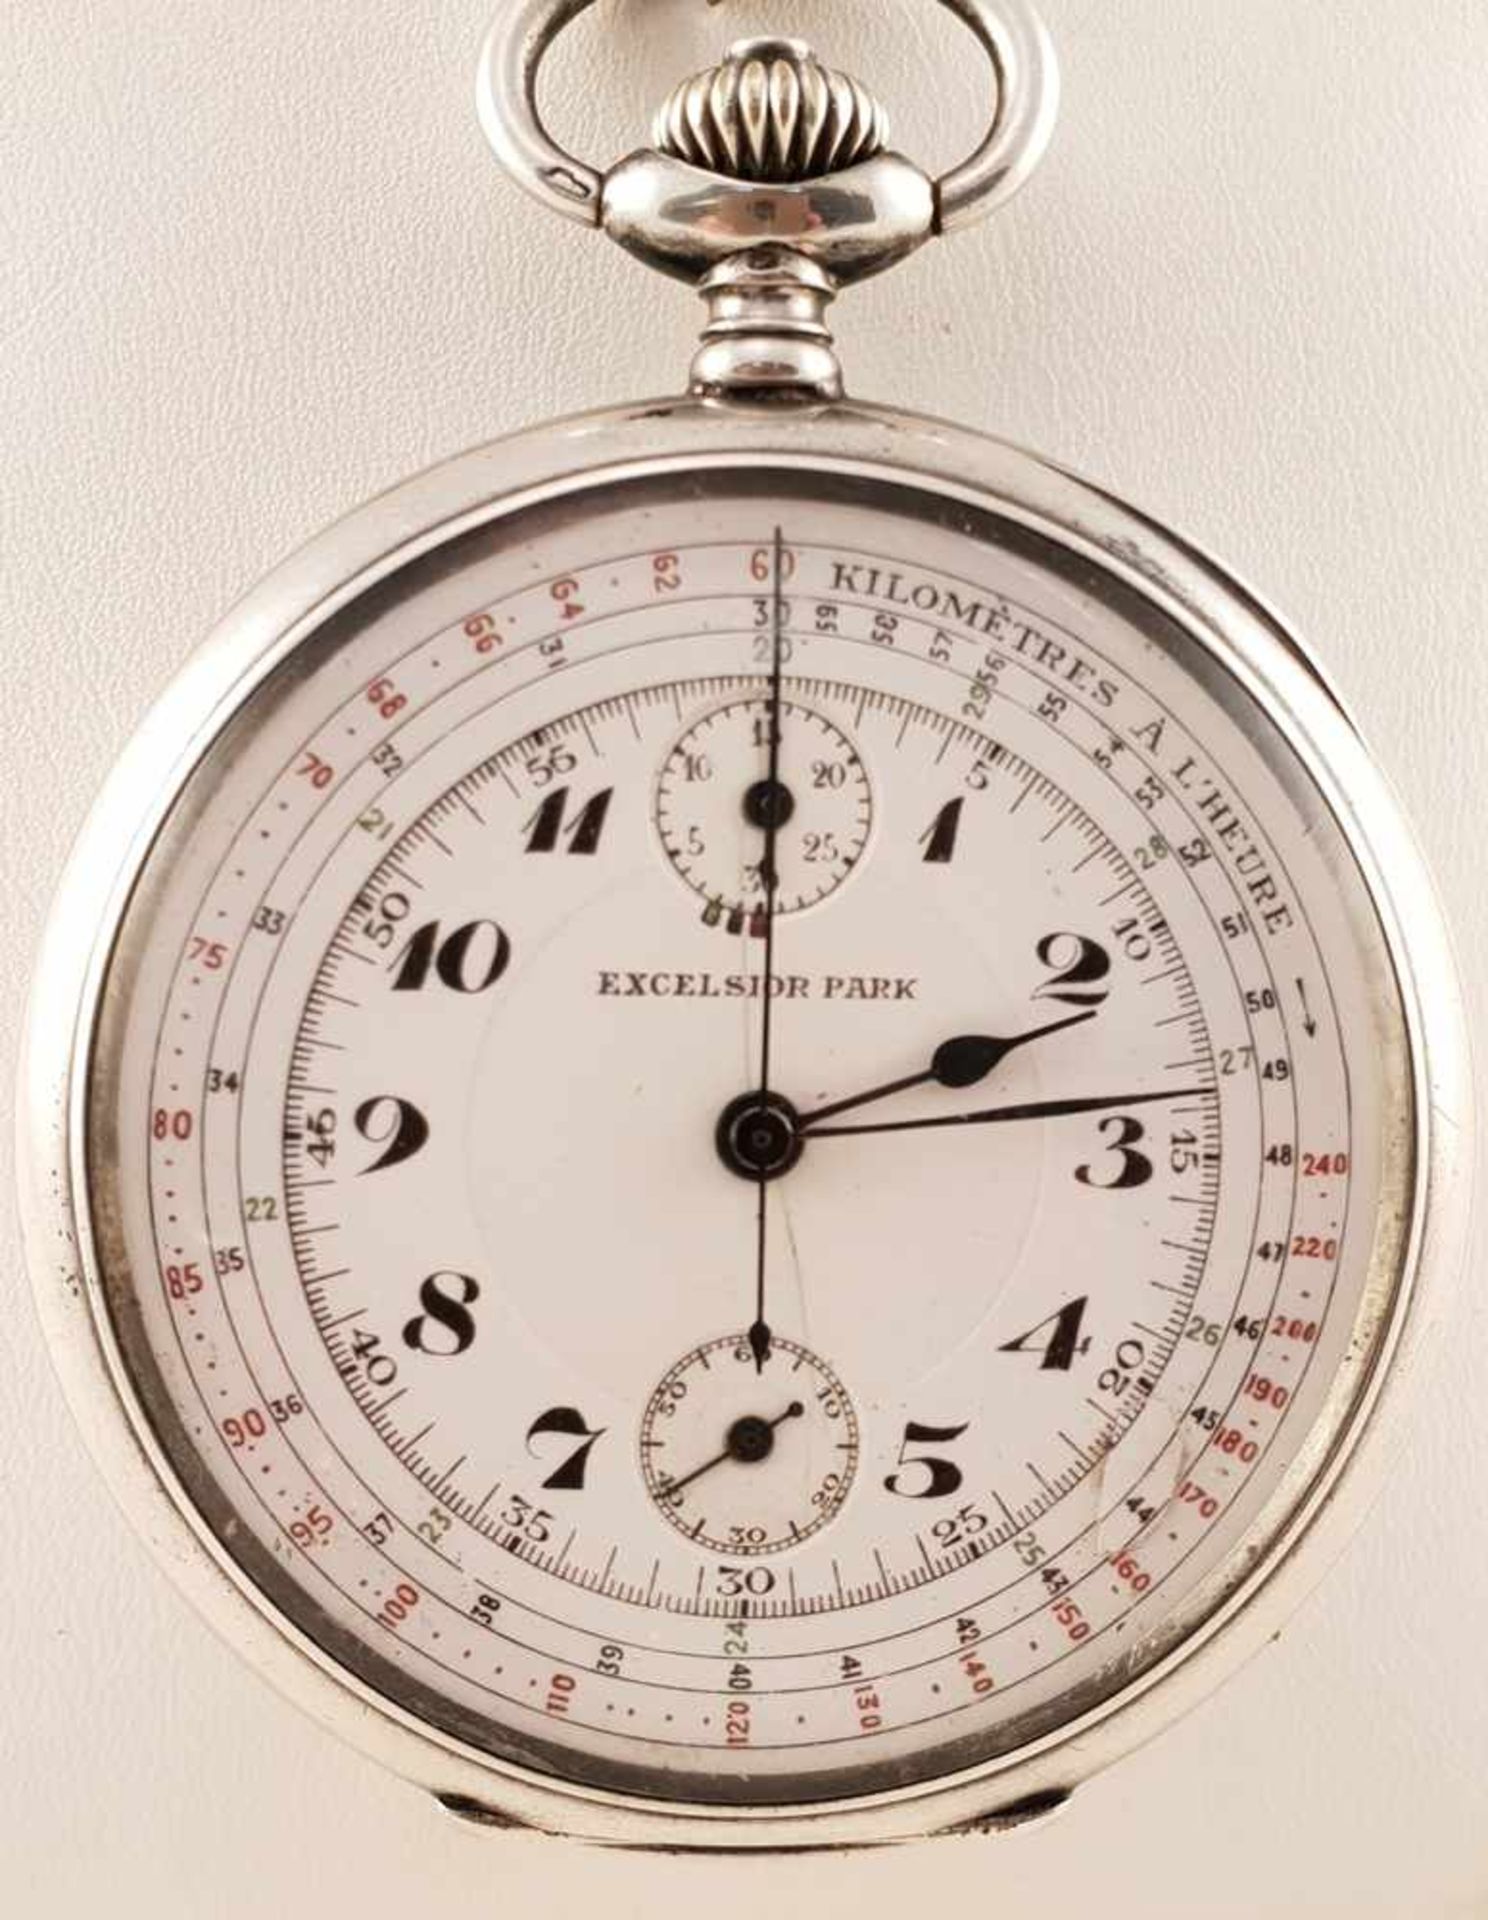 Taschenuhr Chronograph , Excelsior Park , Silber 800, Gehäusenr.: 275193, Zifferblatt leichte